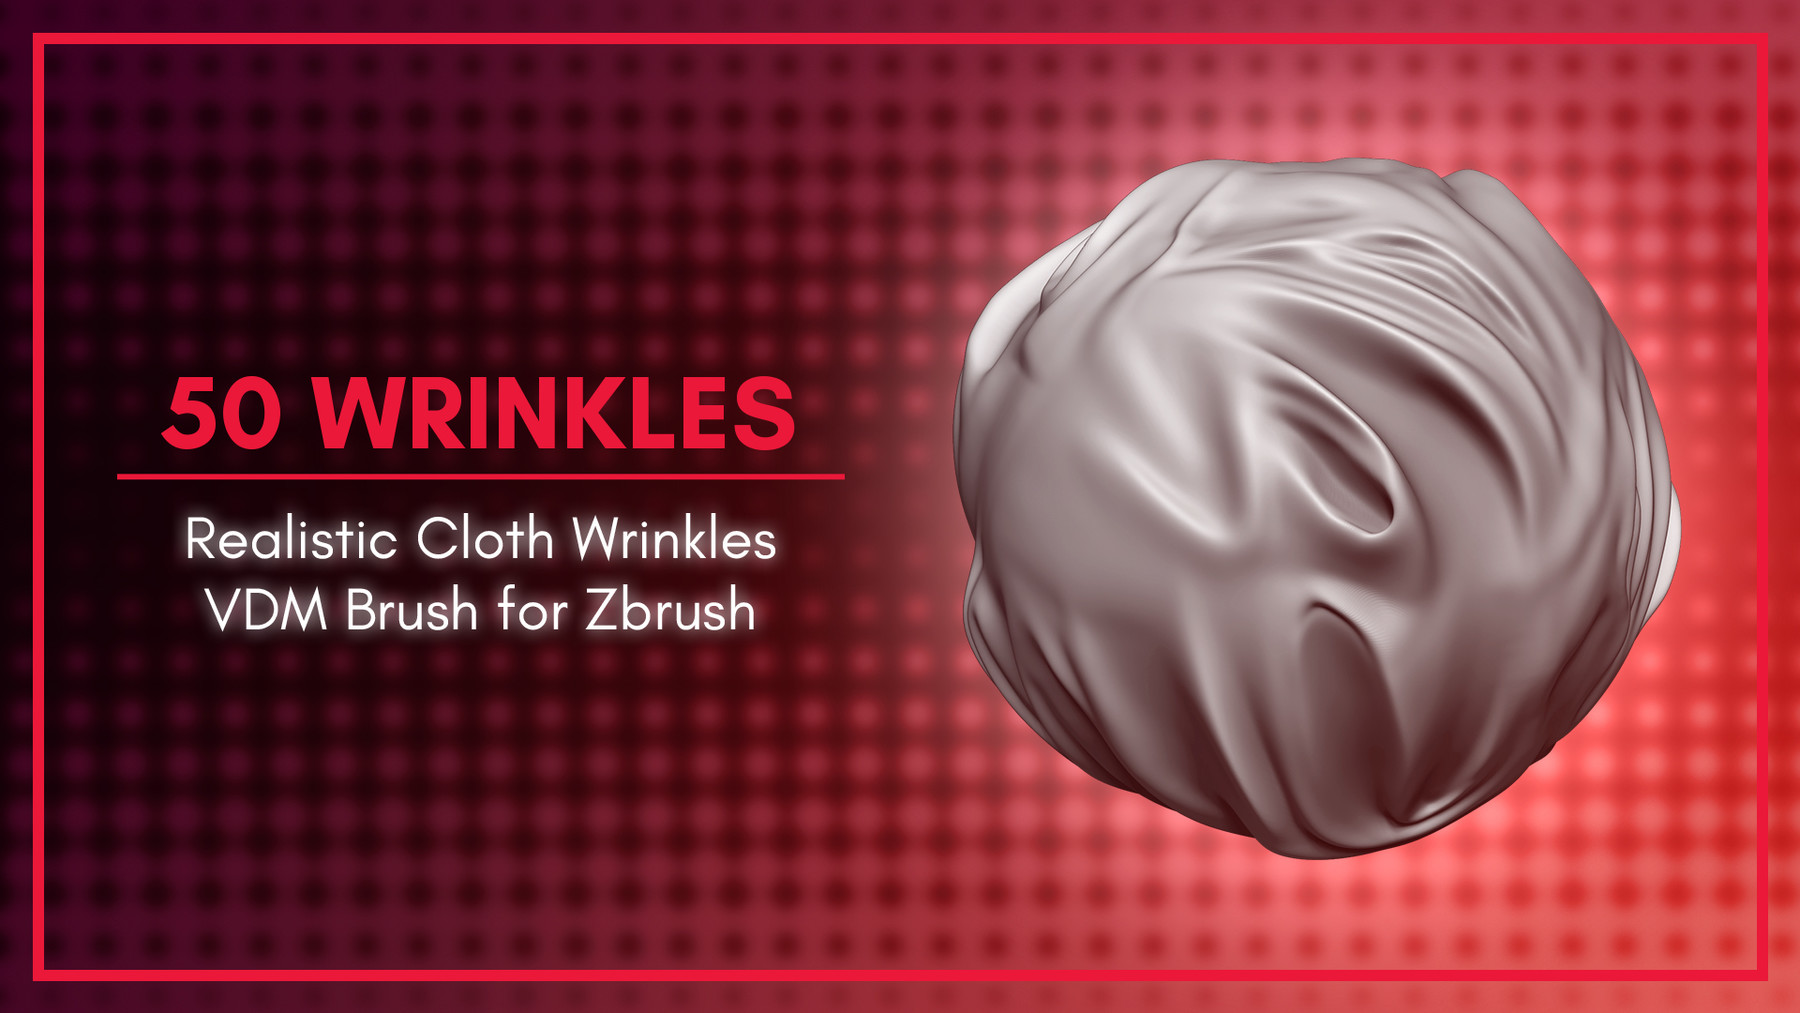 zbrush clothing wrinkles brush